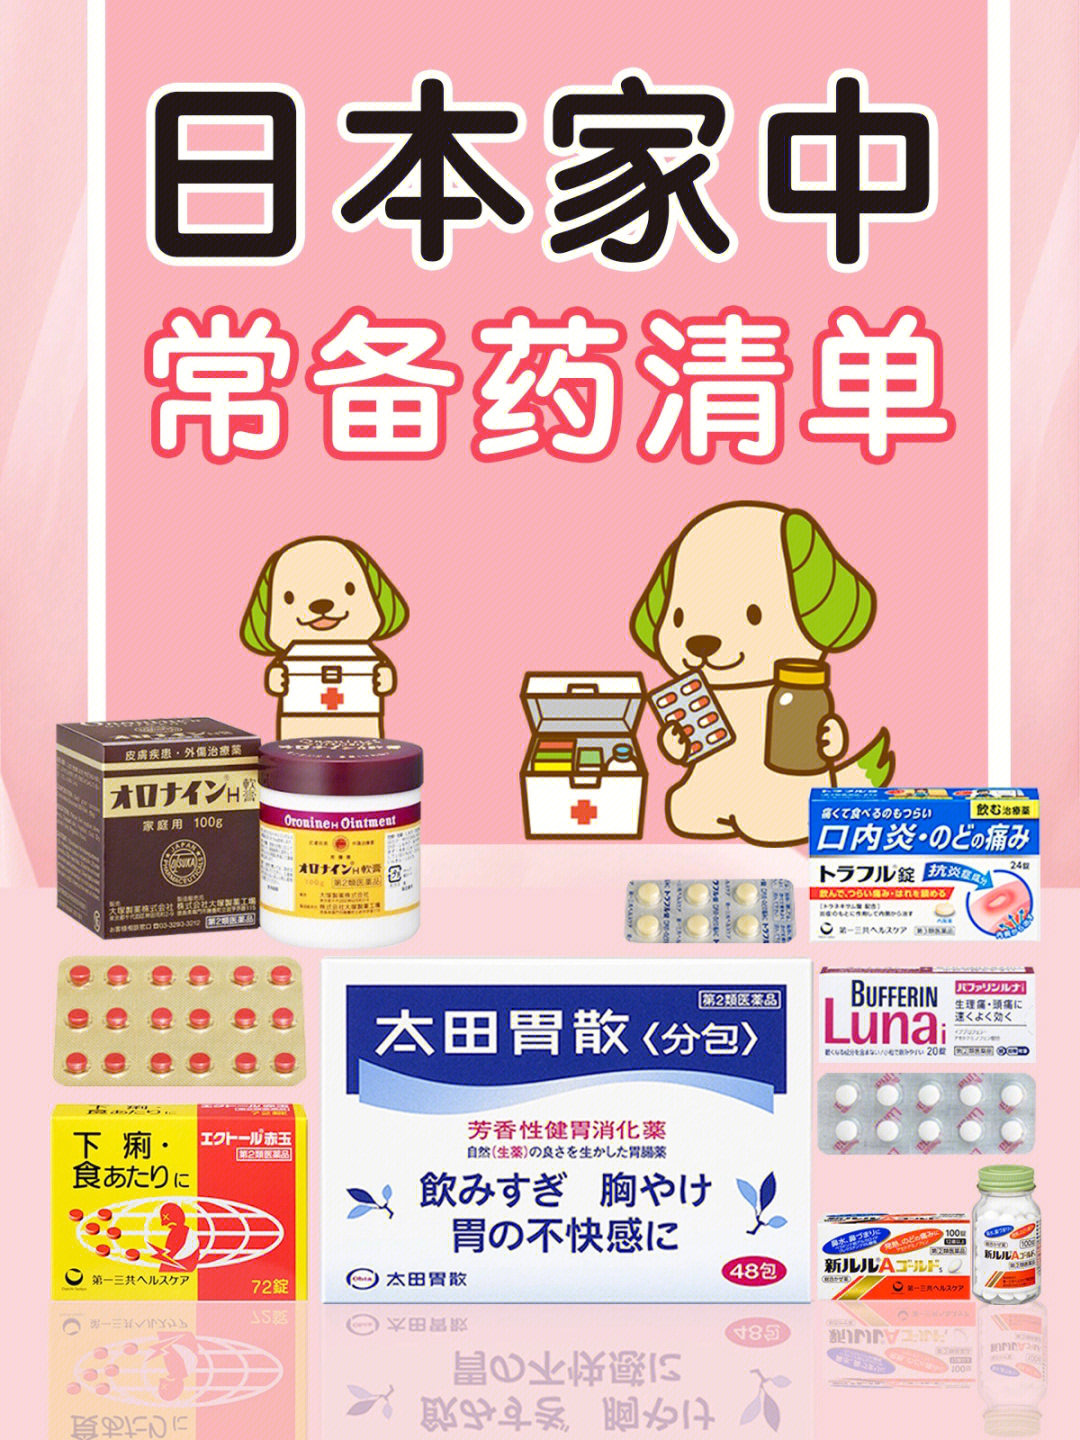 来看看日本家庭中的必备yao品有哪些,赶紧加入购物清单吧08!